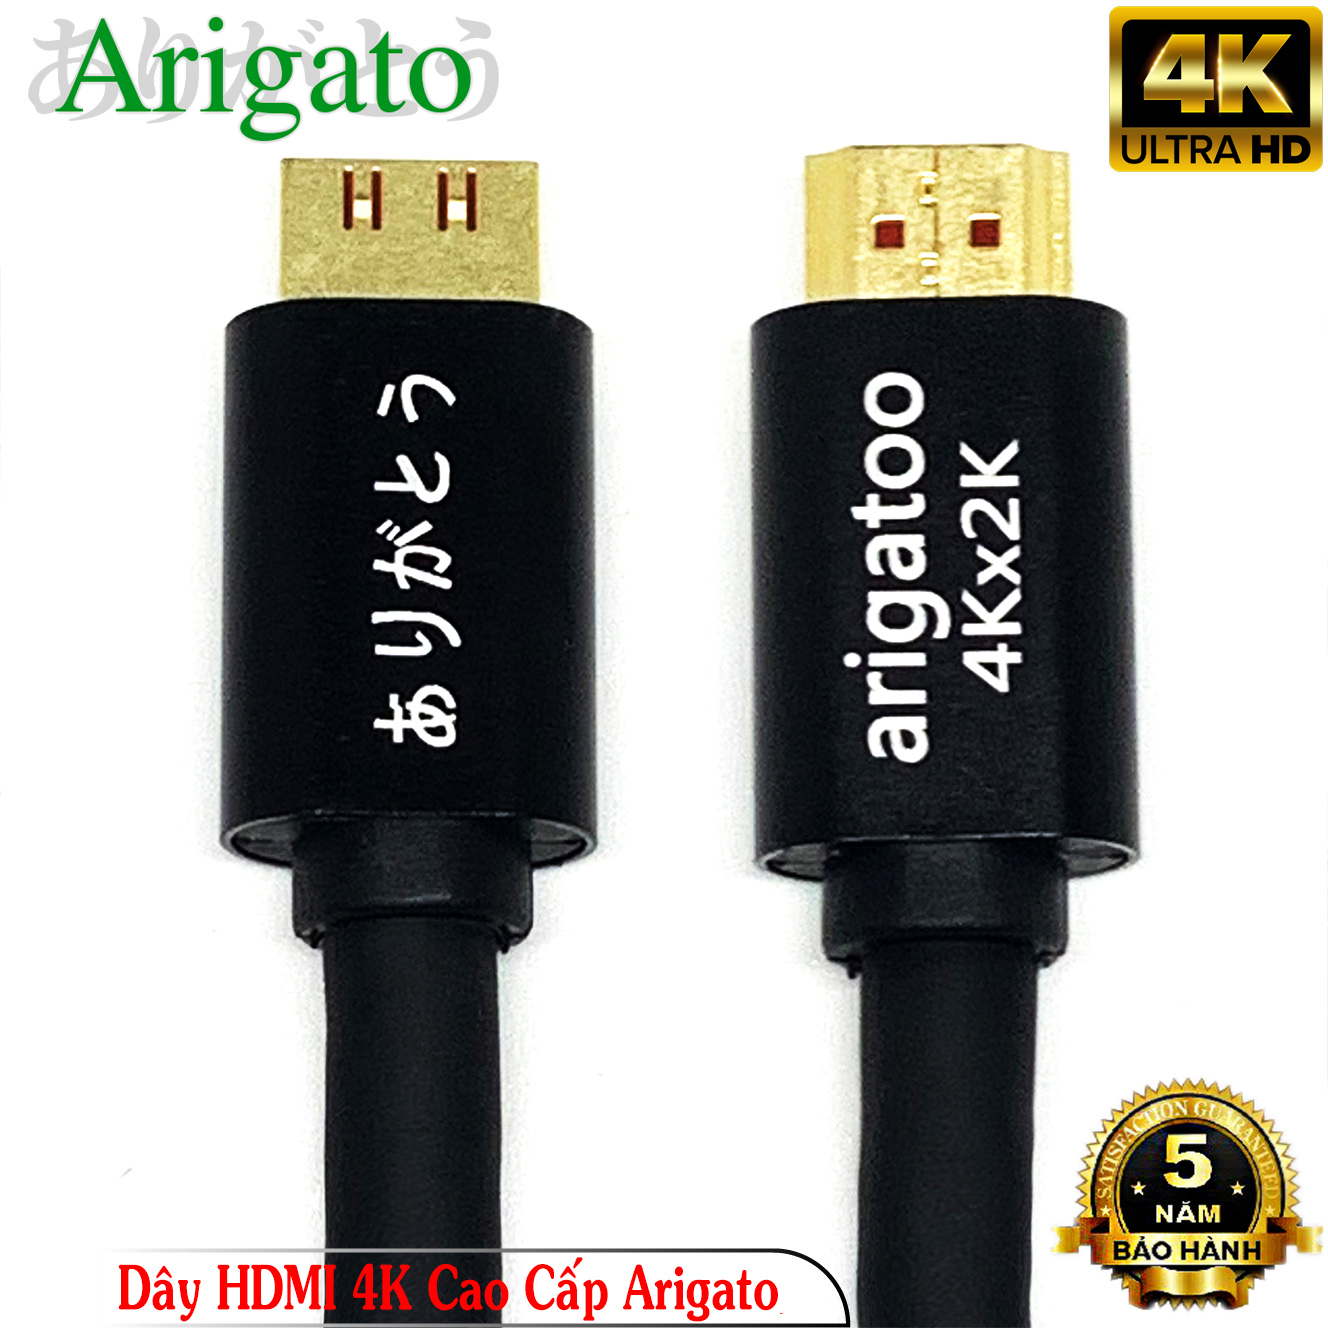 Dây HDMI 5M Arigatoo Chuẩn 4K Xịn